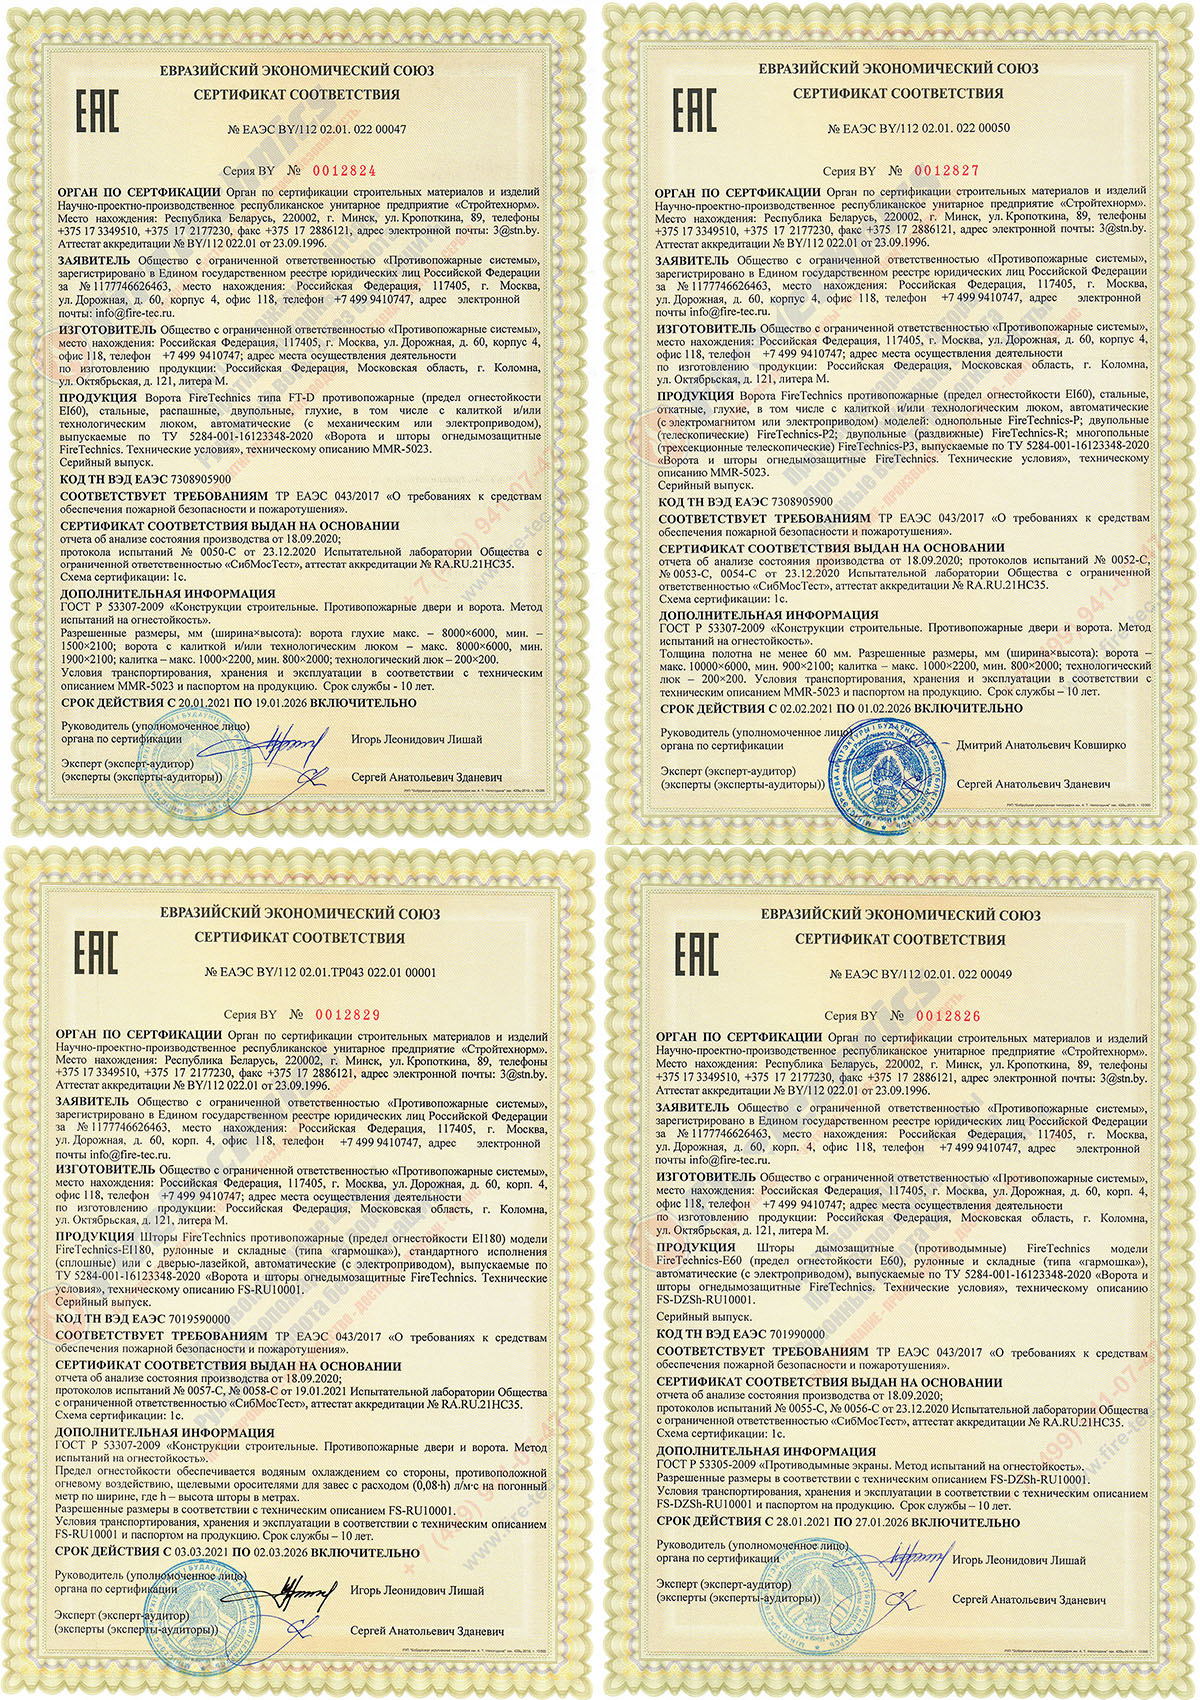 Соответствие Евразийскому стандарту сертификации